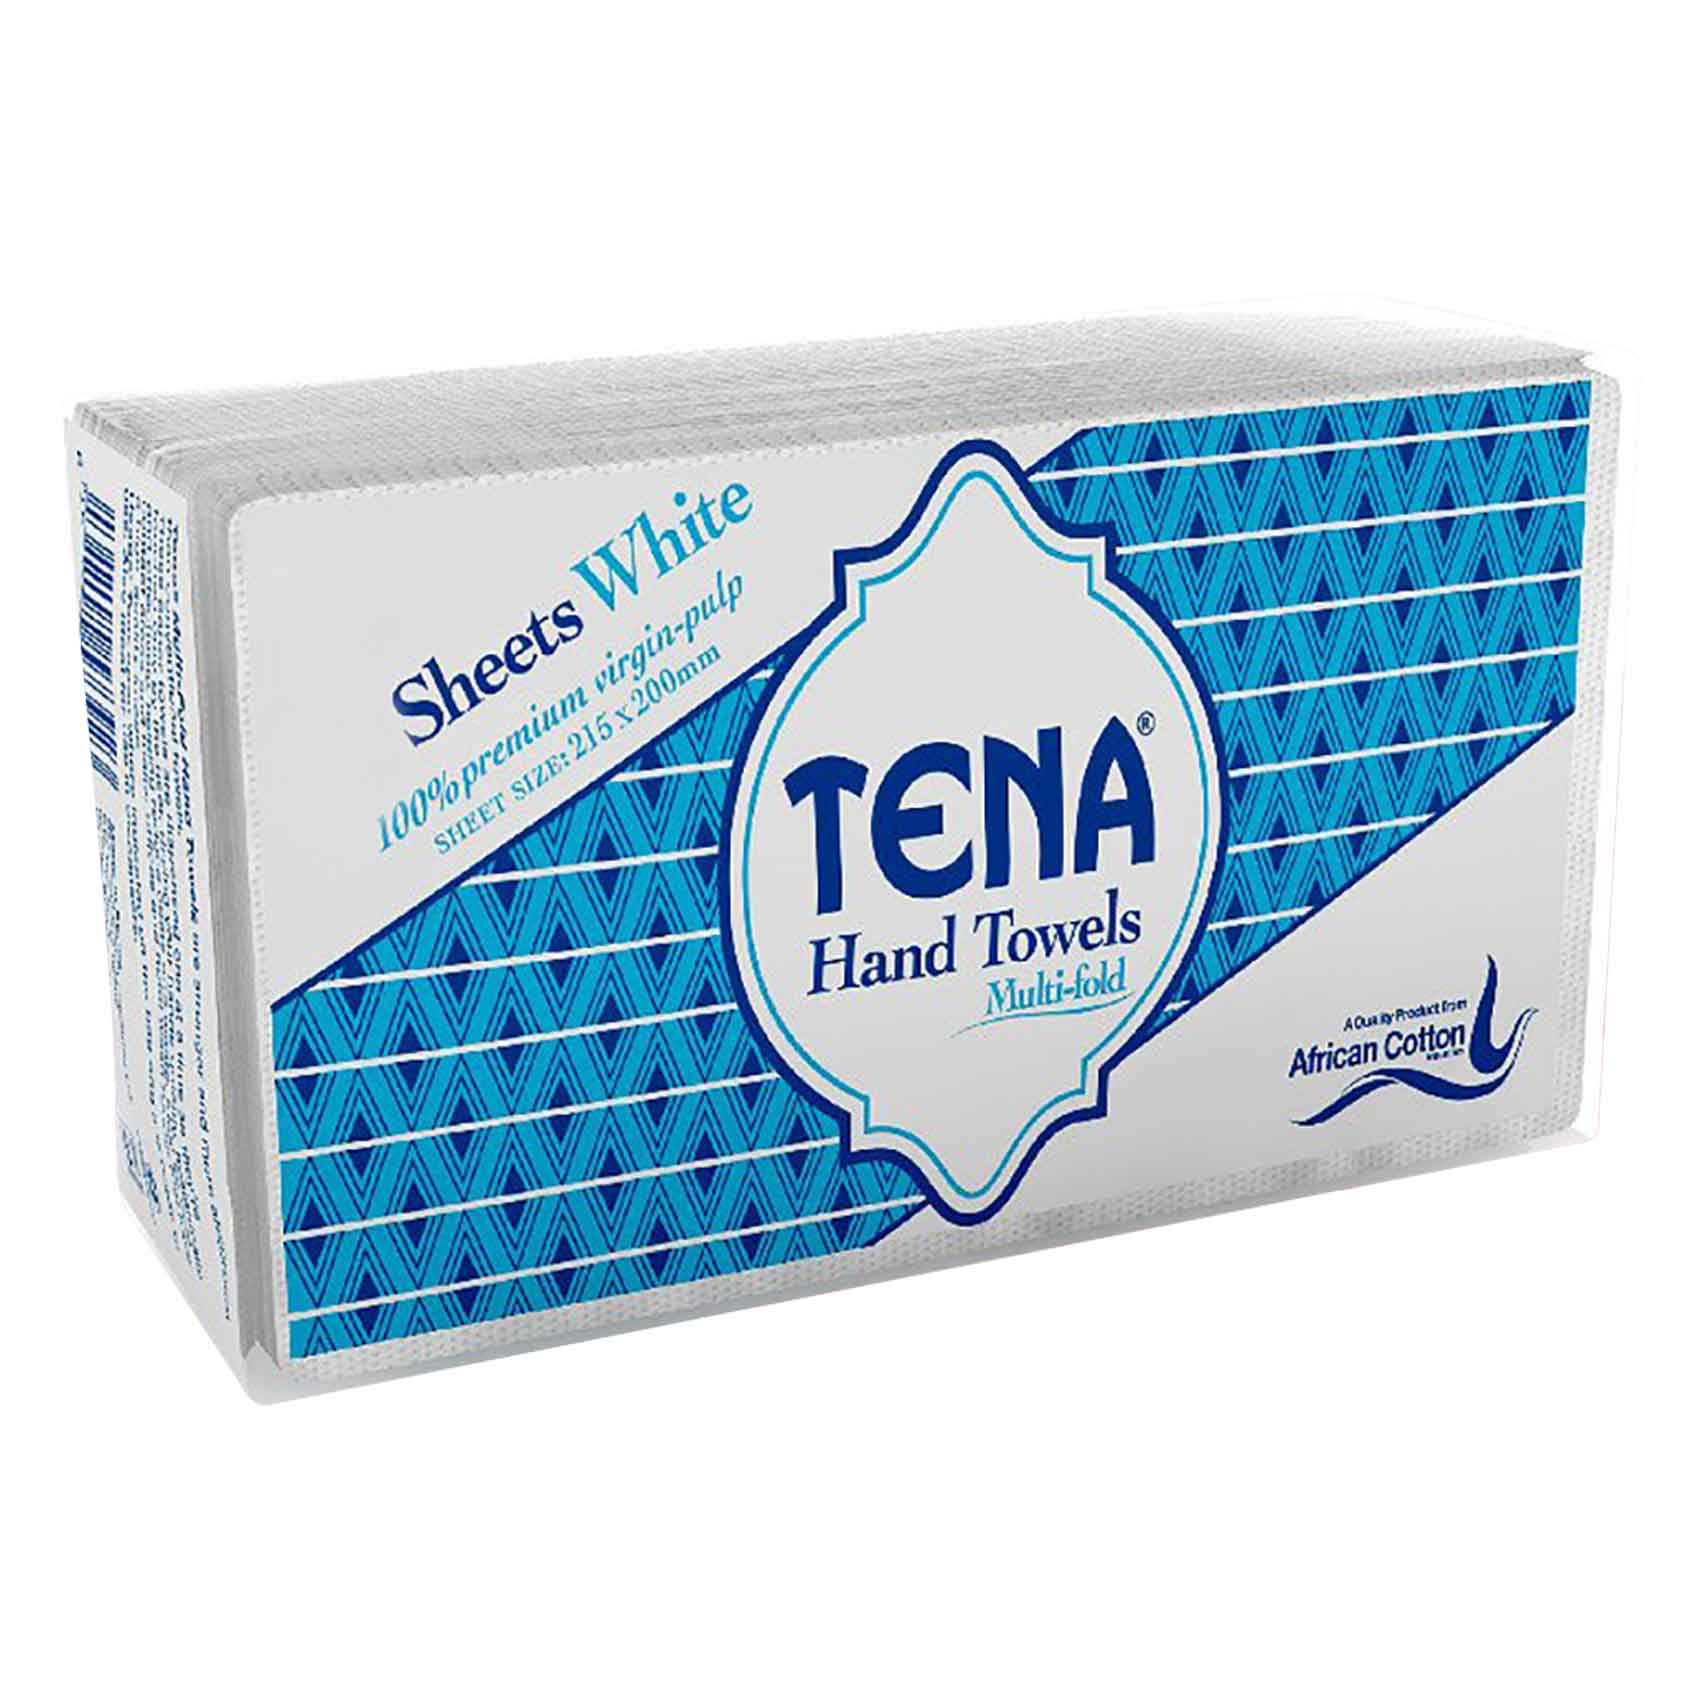 Tena Multi-Fold Hand Towels 215x200mm 240 Piece